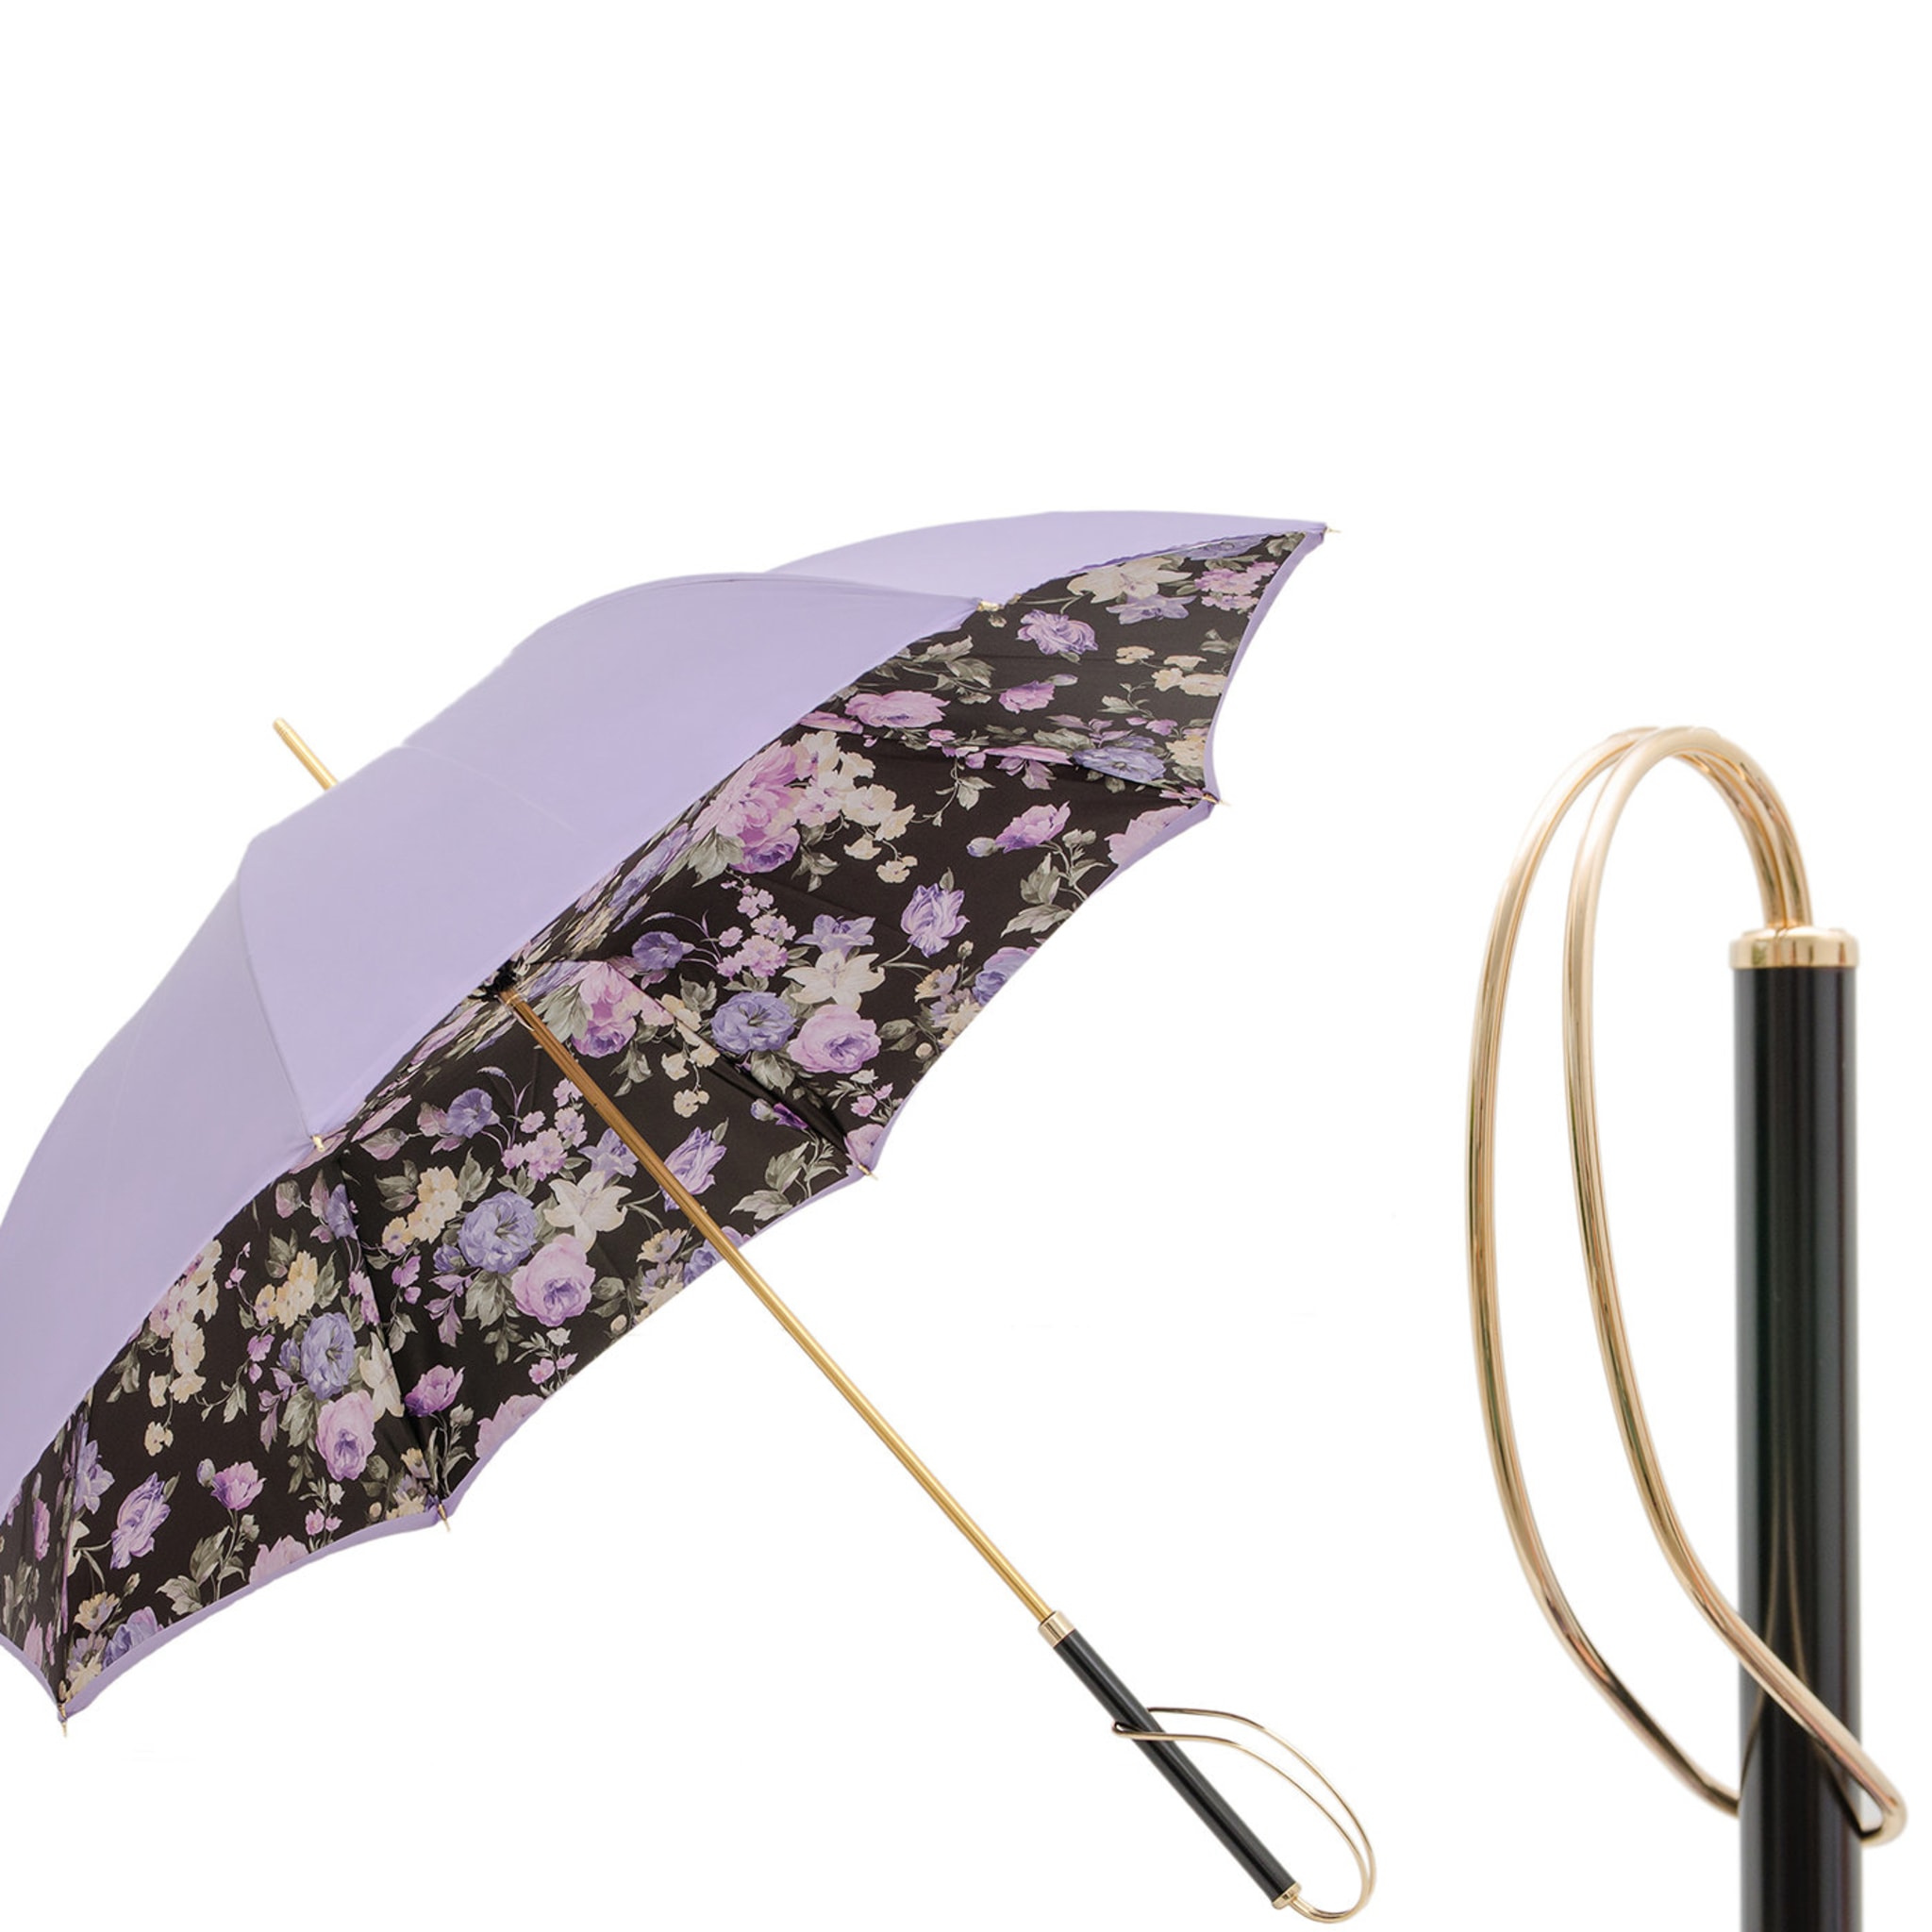 Parapluie fleurs lilas - Vue alternative 1